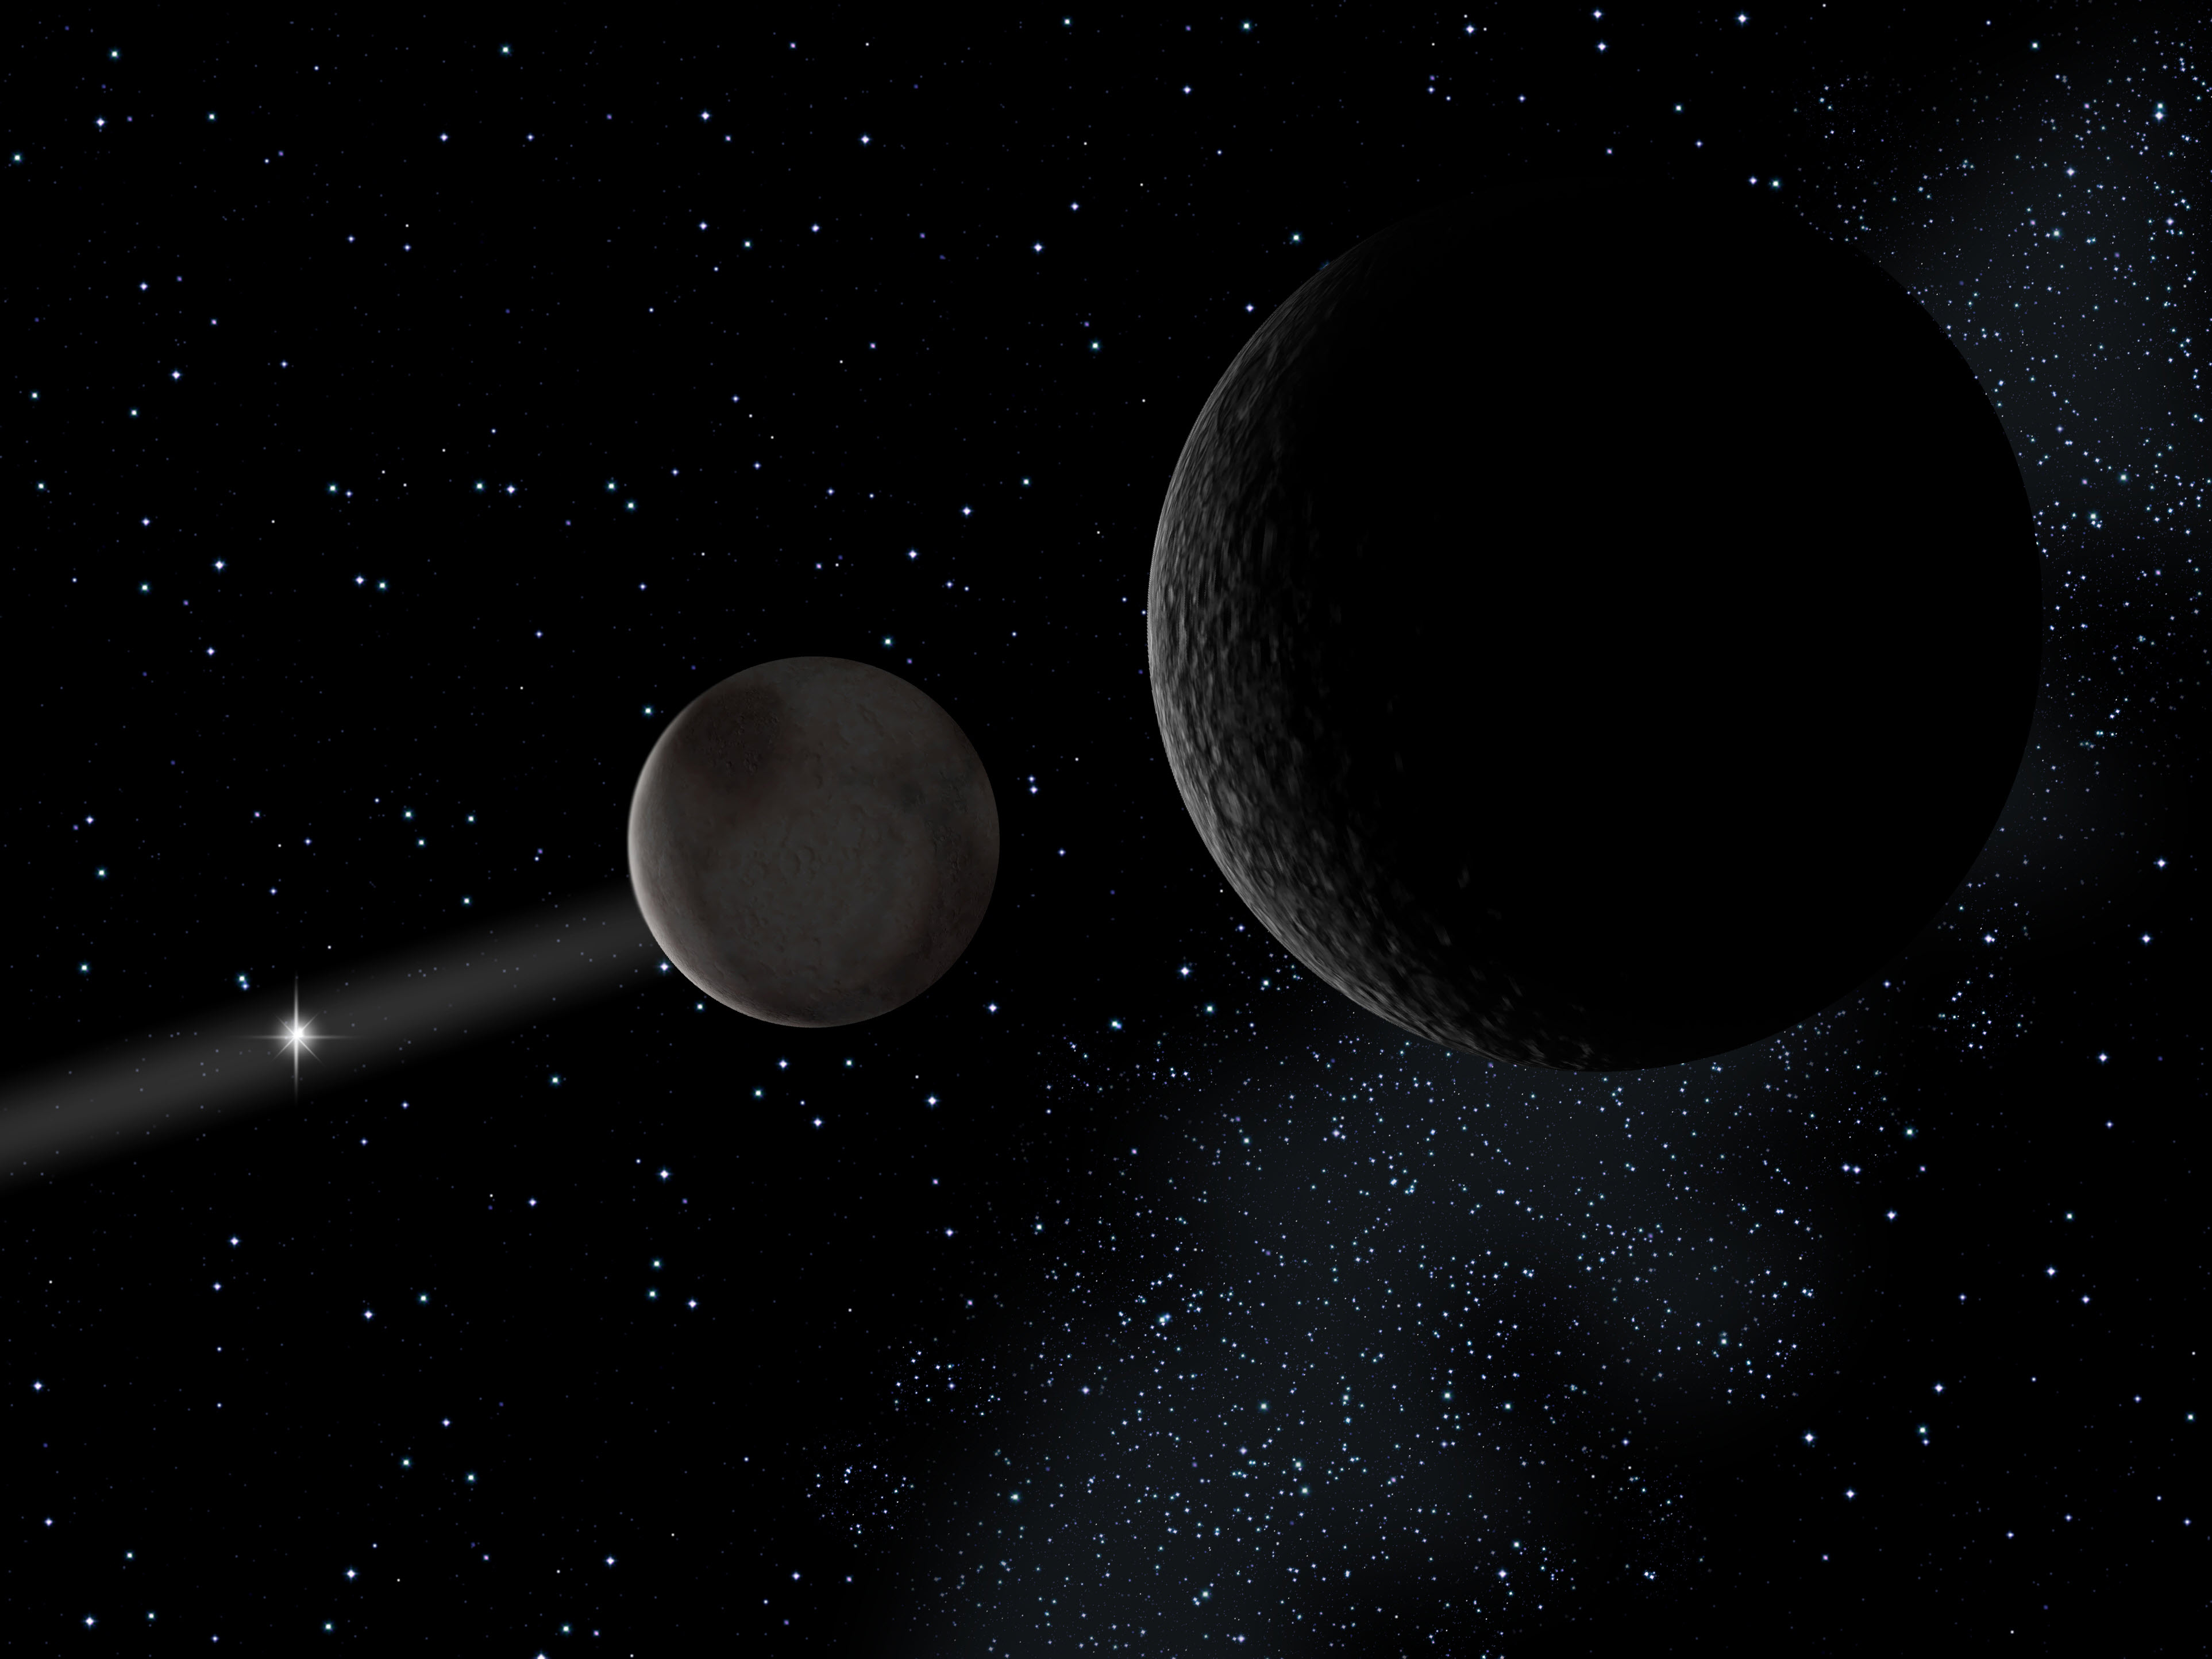 A Plútó és egyik holdja, a Charon illusztrációja